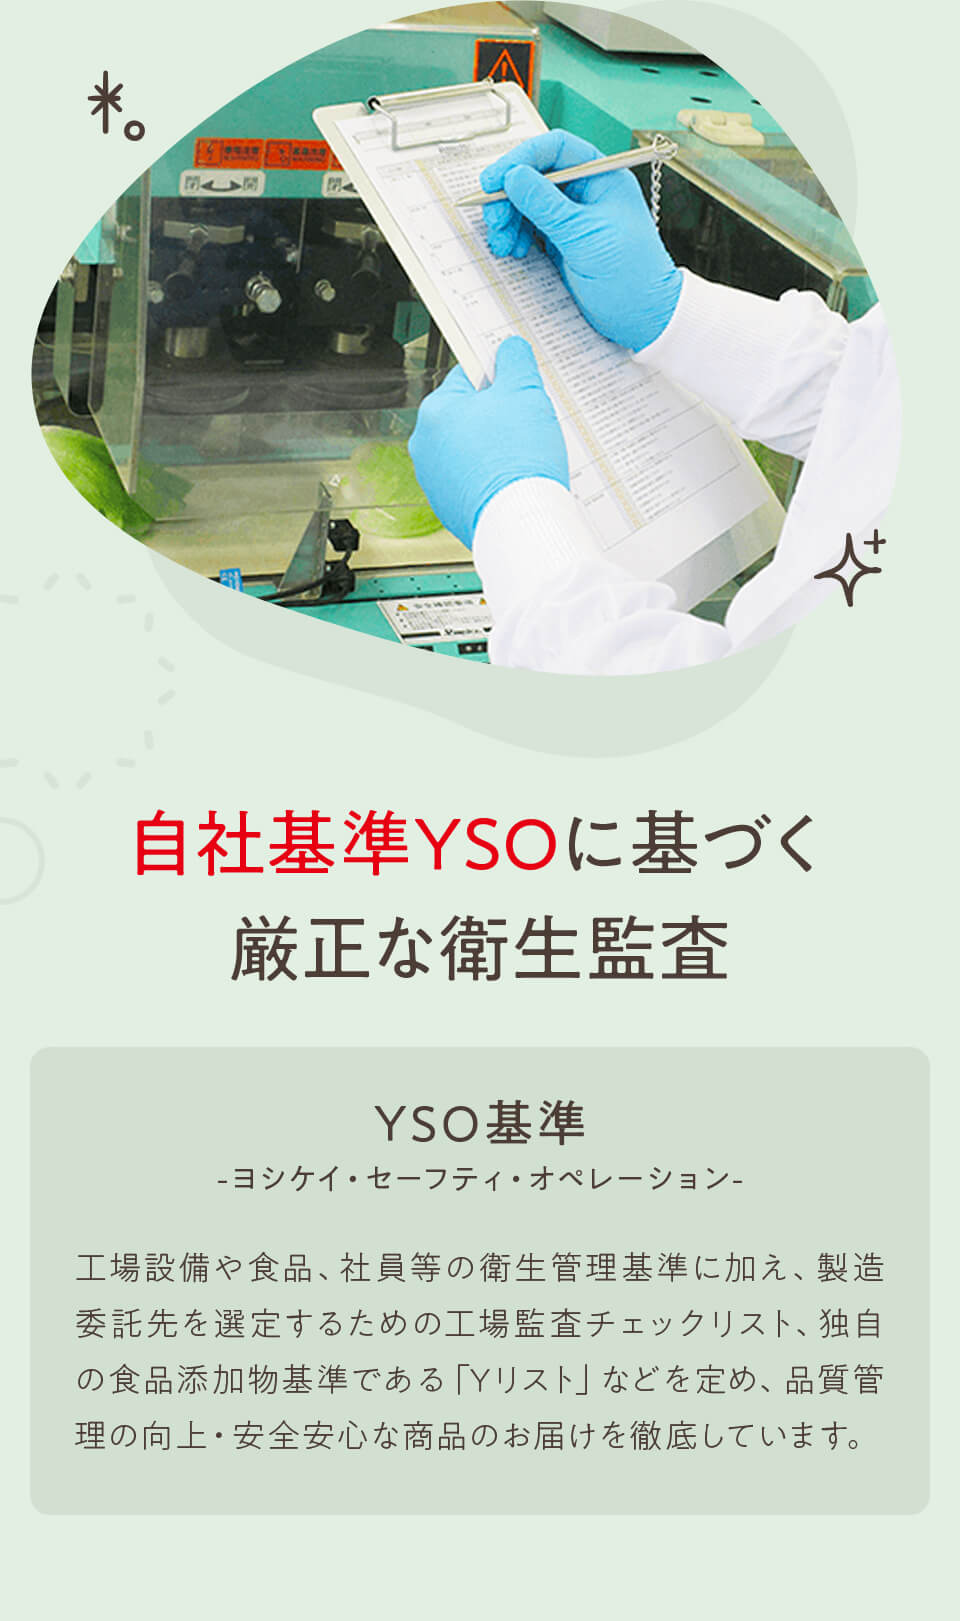 自社基準YSOに基づく厳正な衛生監査